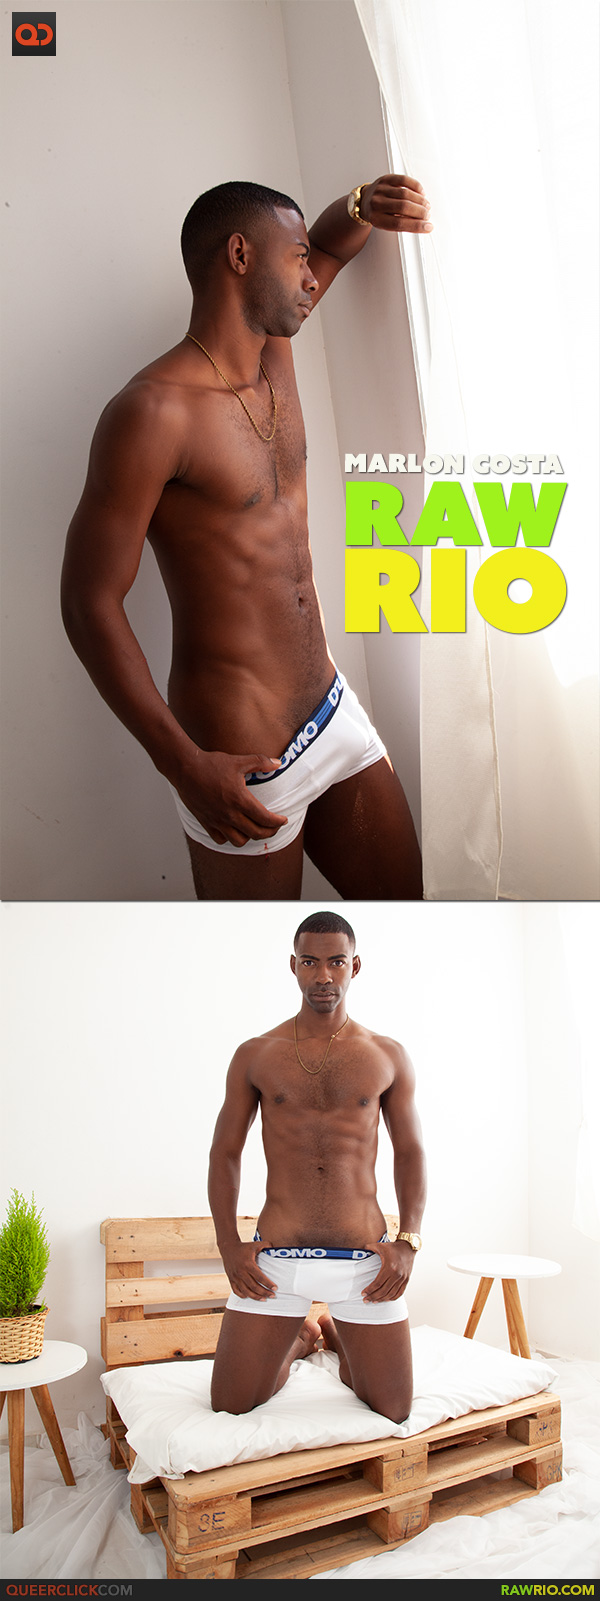 Raw Rio: Marlon Costa